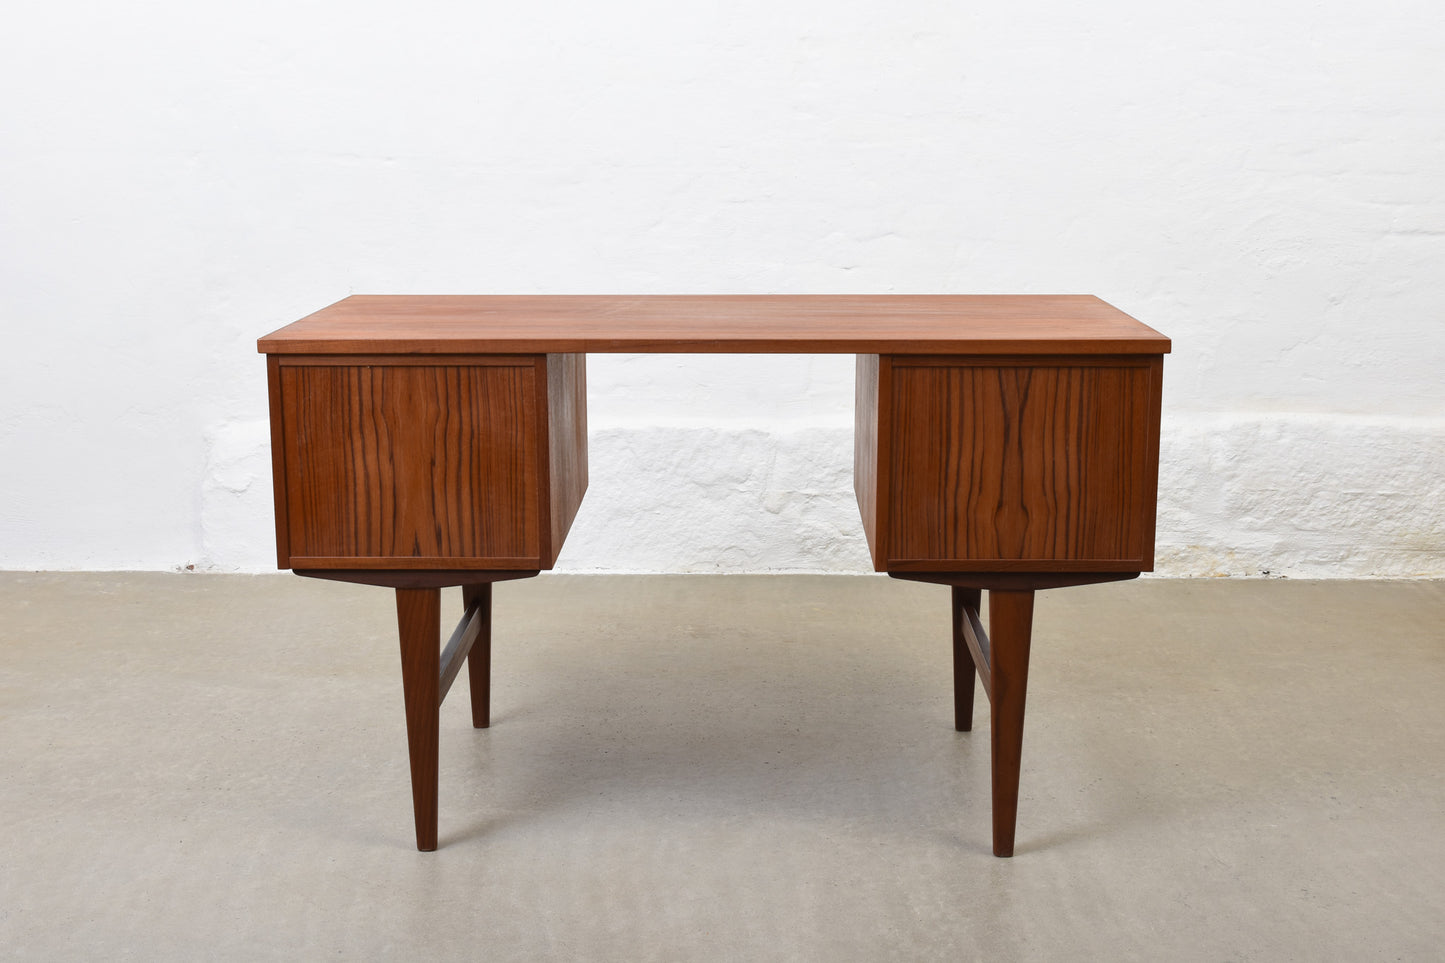 1960s twin pedestal desk in teak